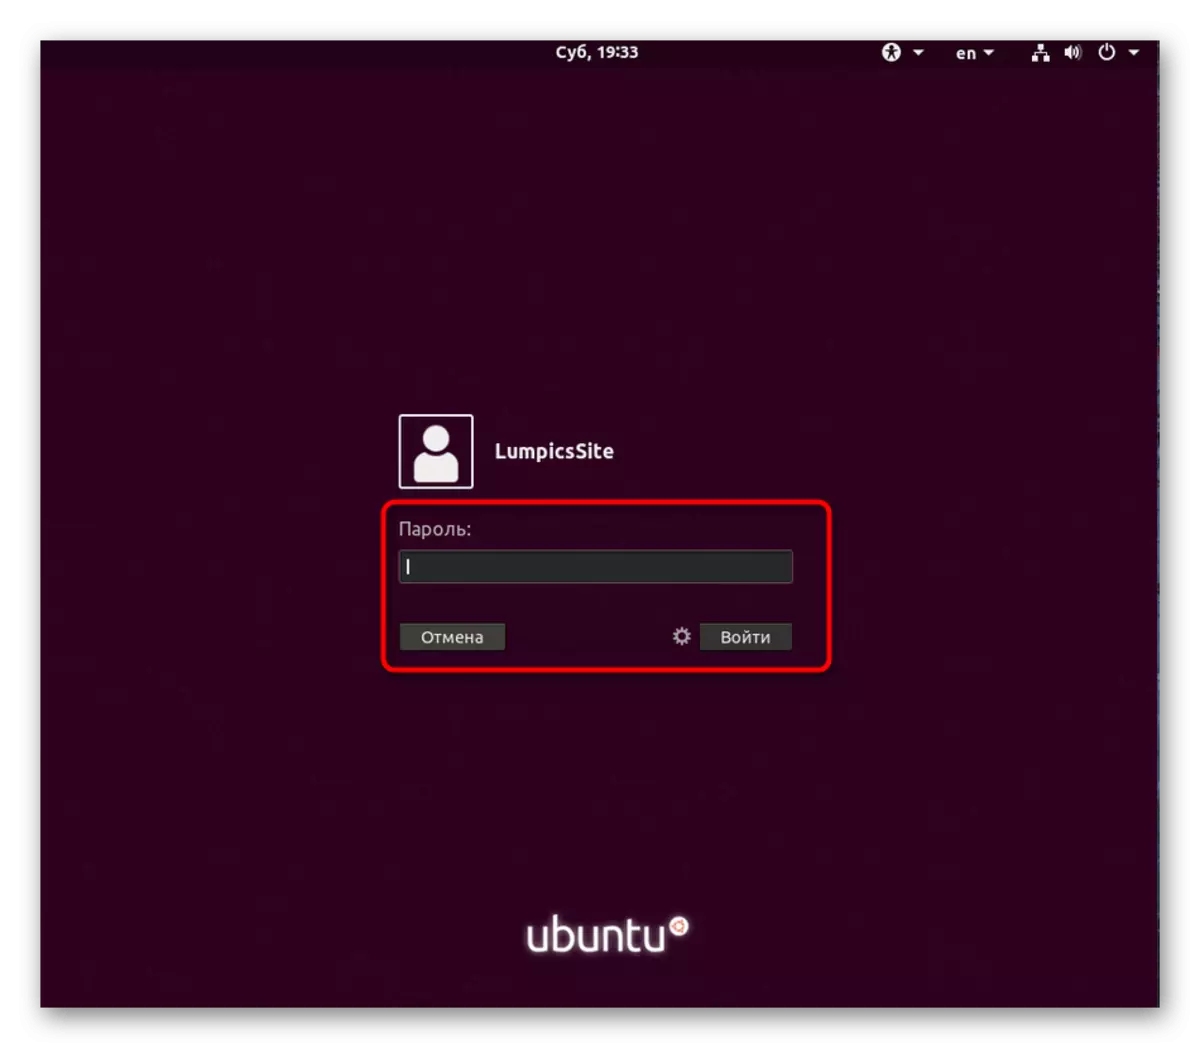 Внесете ја лозинката за да го овластите корисникот во Ubuntu